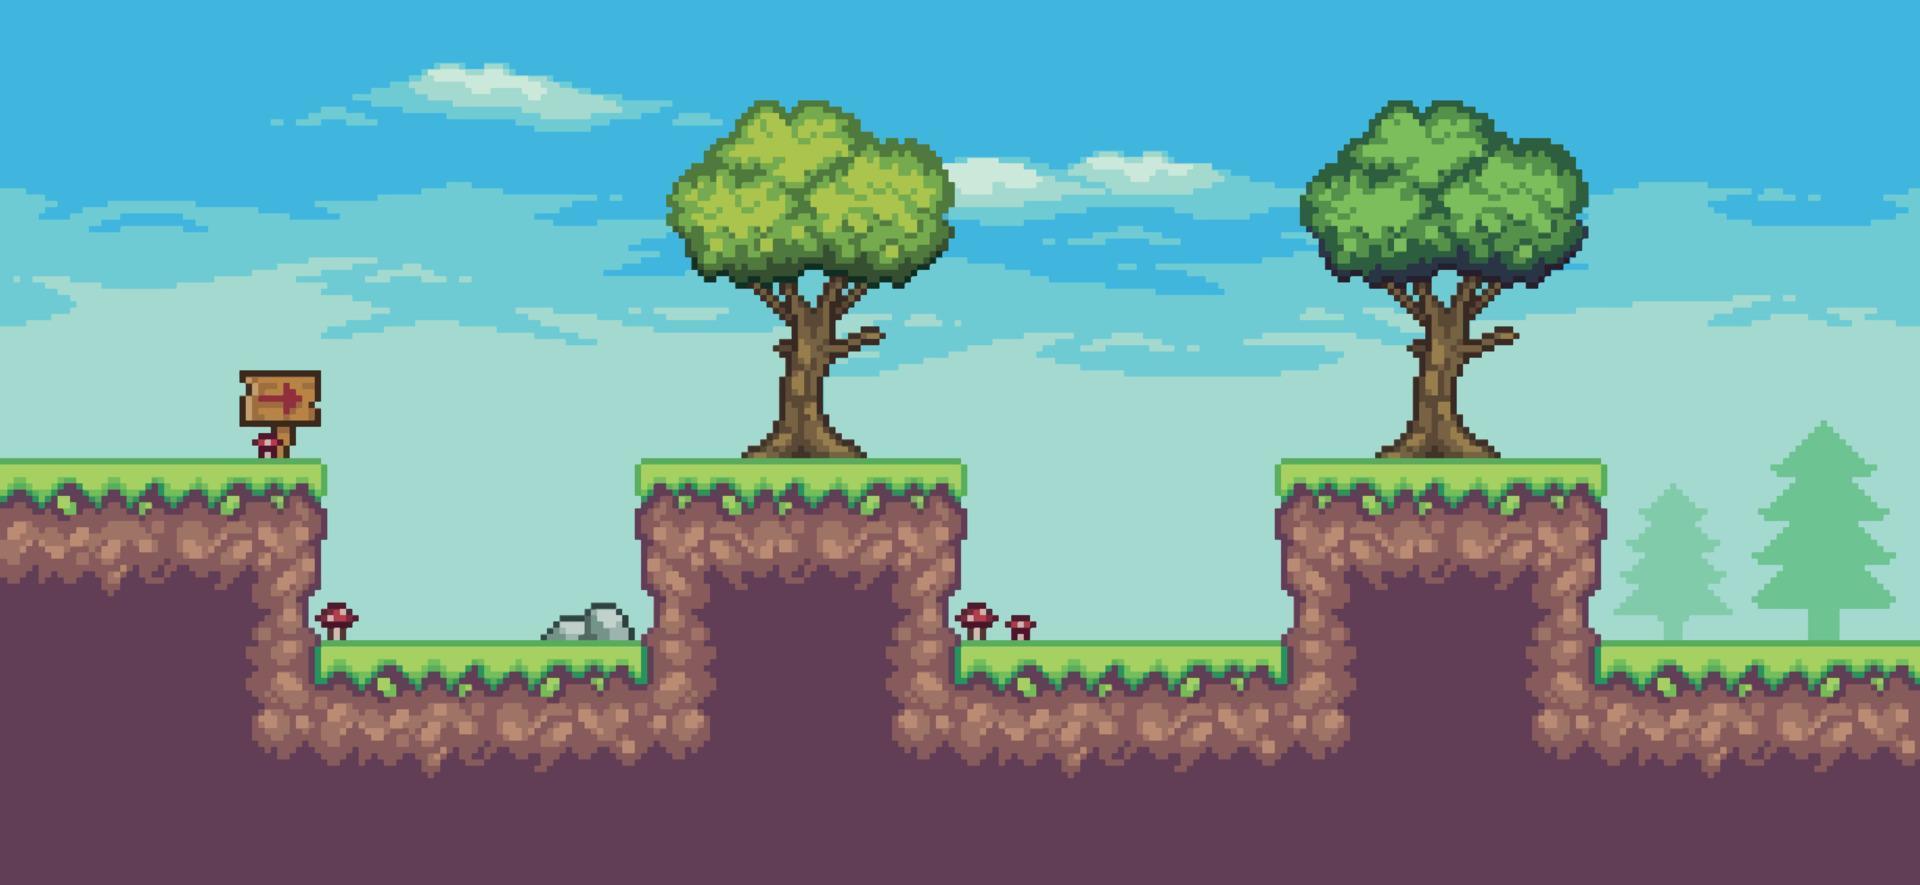 scena di gioco arcade pixel art con alberi, tavola di legno e nuvole sfondo vettoriale a 8 bit